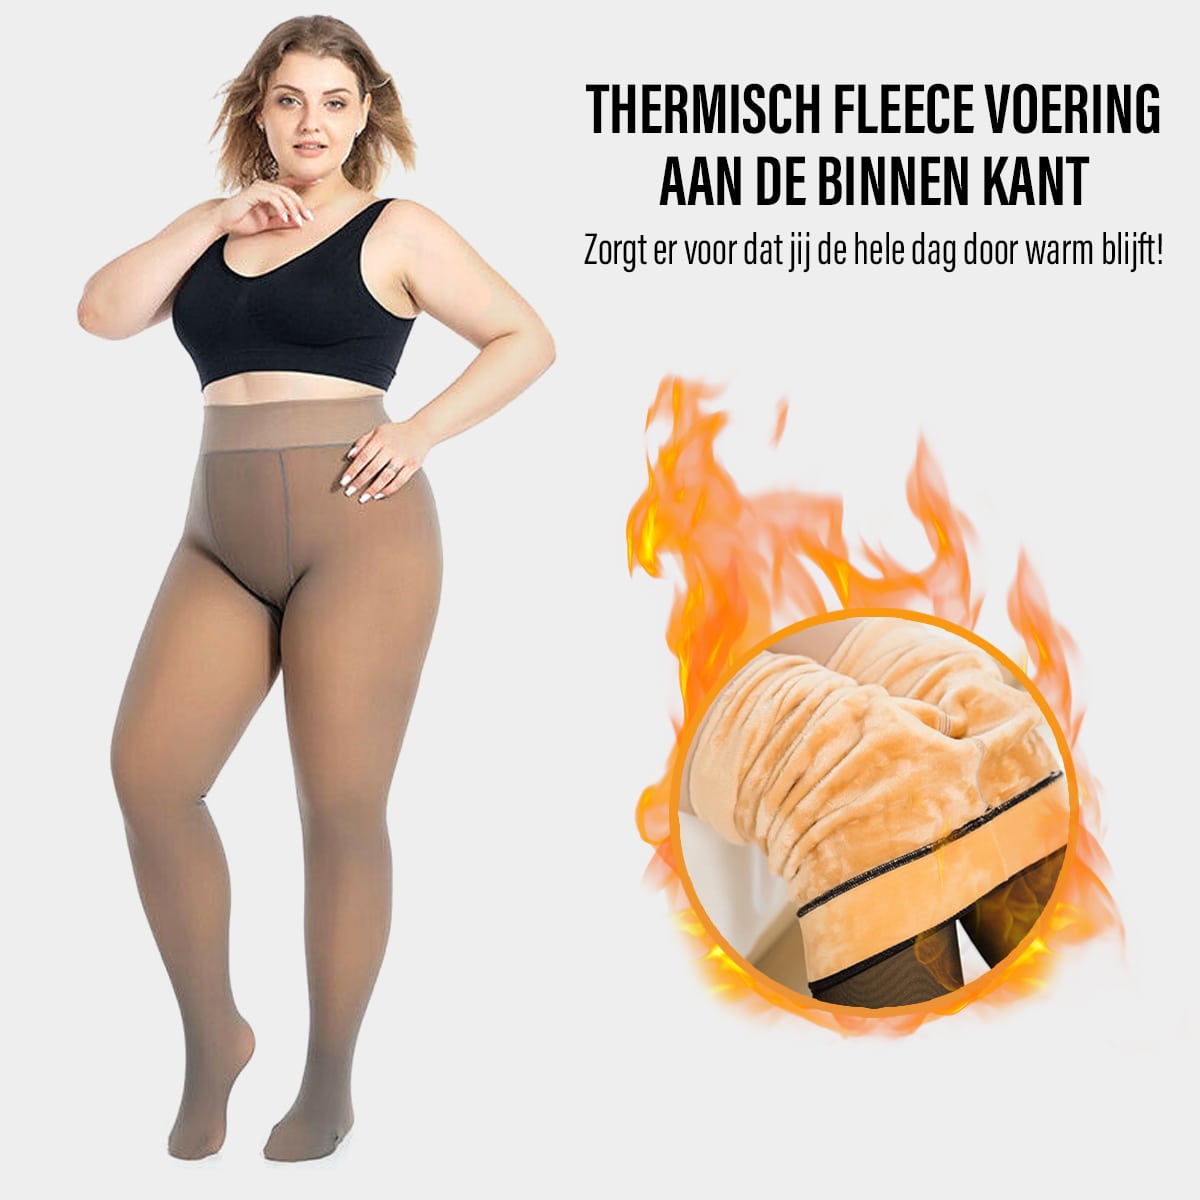 Thermische fleece panty met vlammen en warme voering